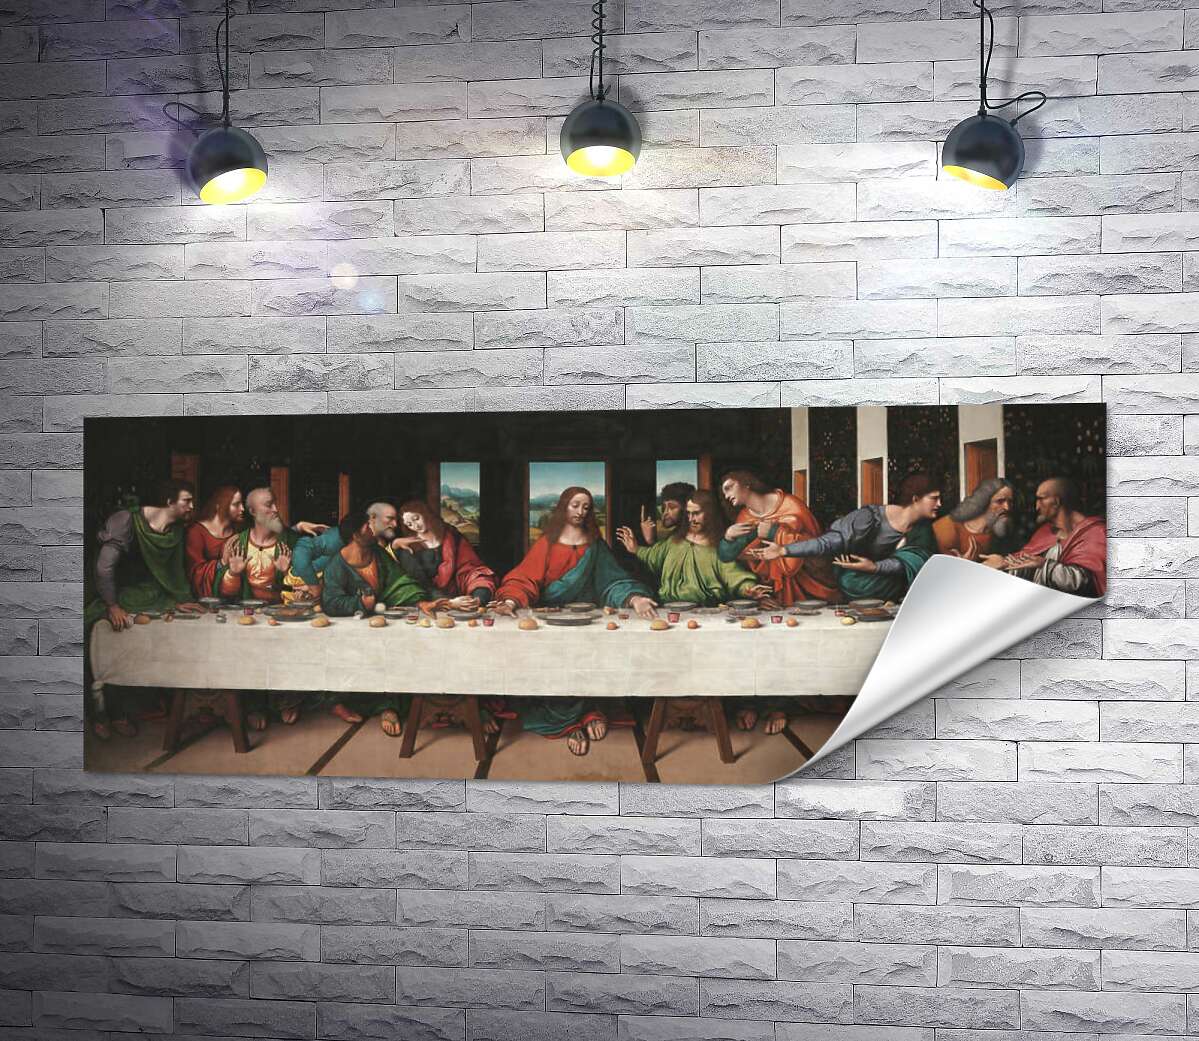 друк Копія фрески Леонардо да Вінчі "Таємна вечеря" - Джампертіно